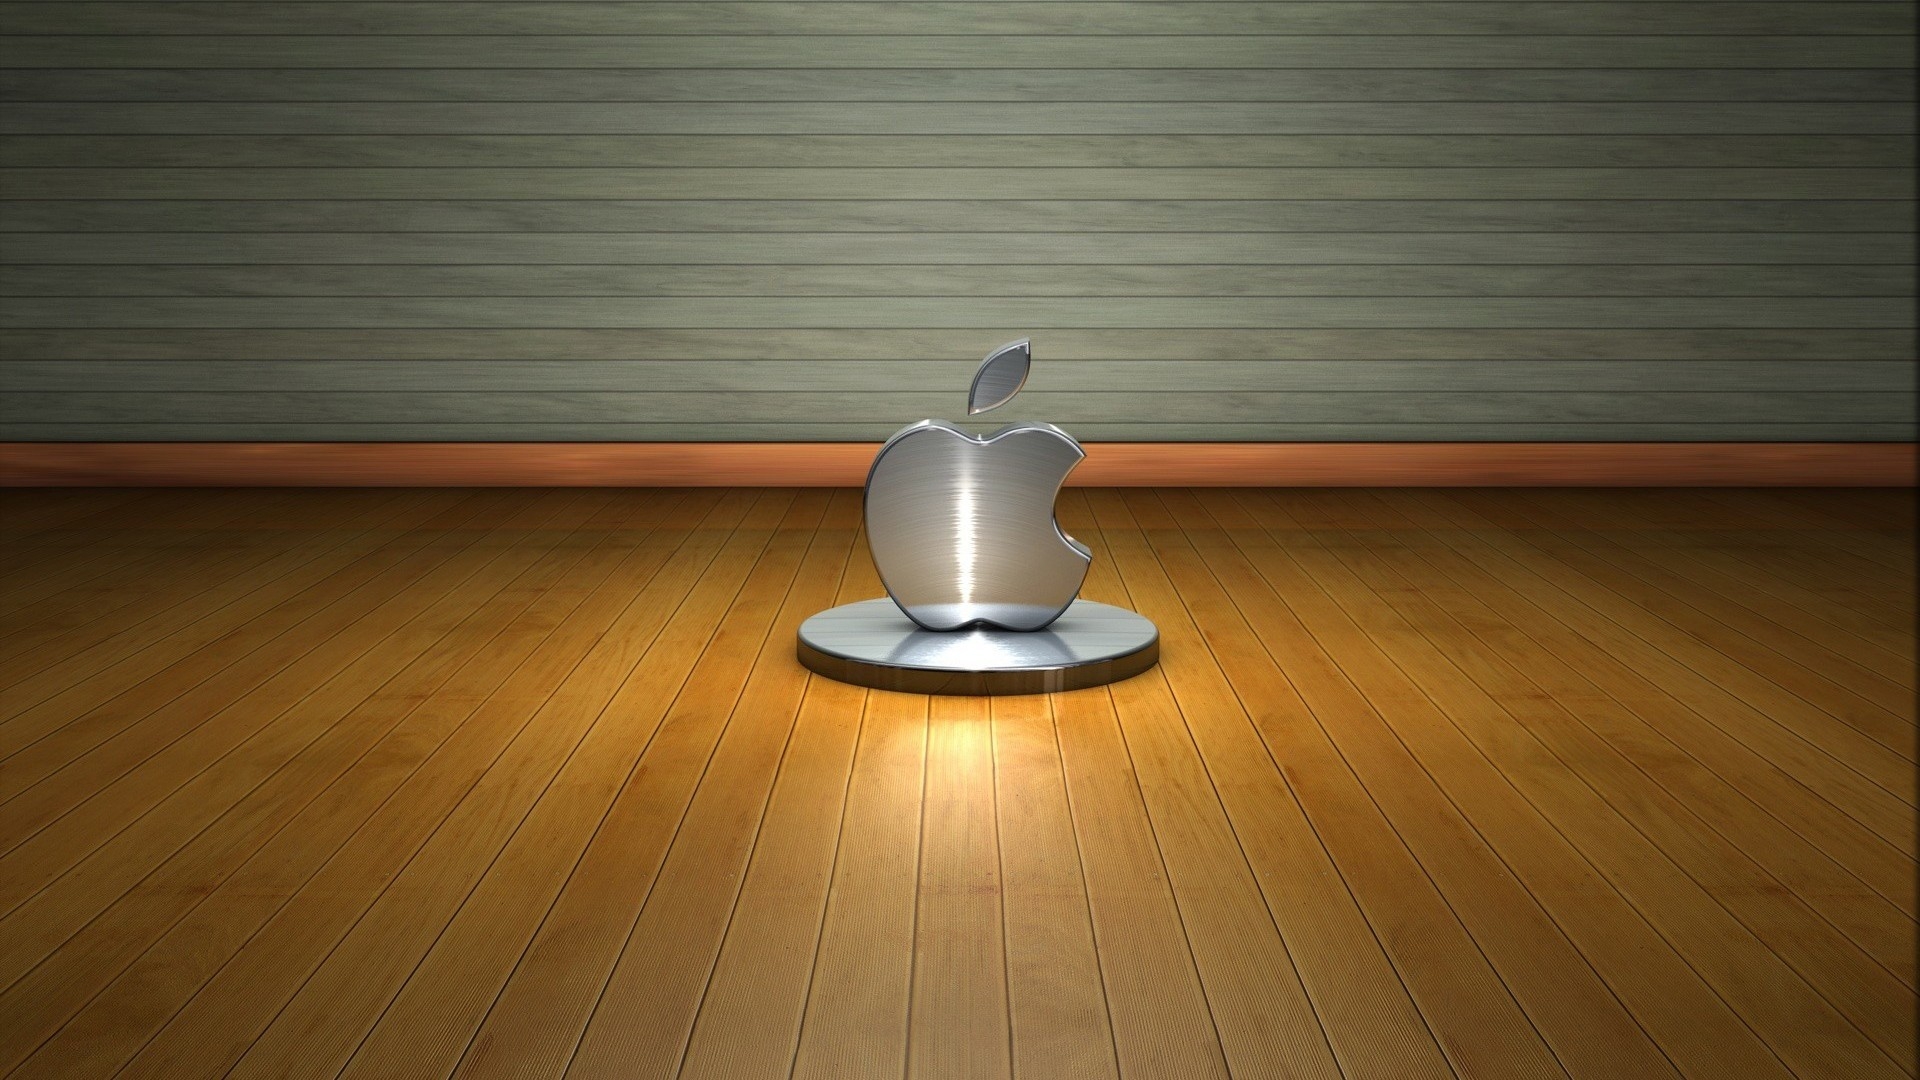 3D Apple Logo for 1920 x 1080 HDTV 1080p resolution